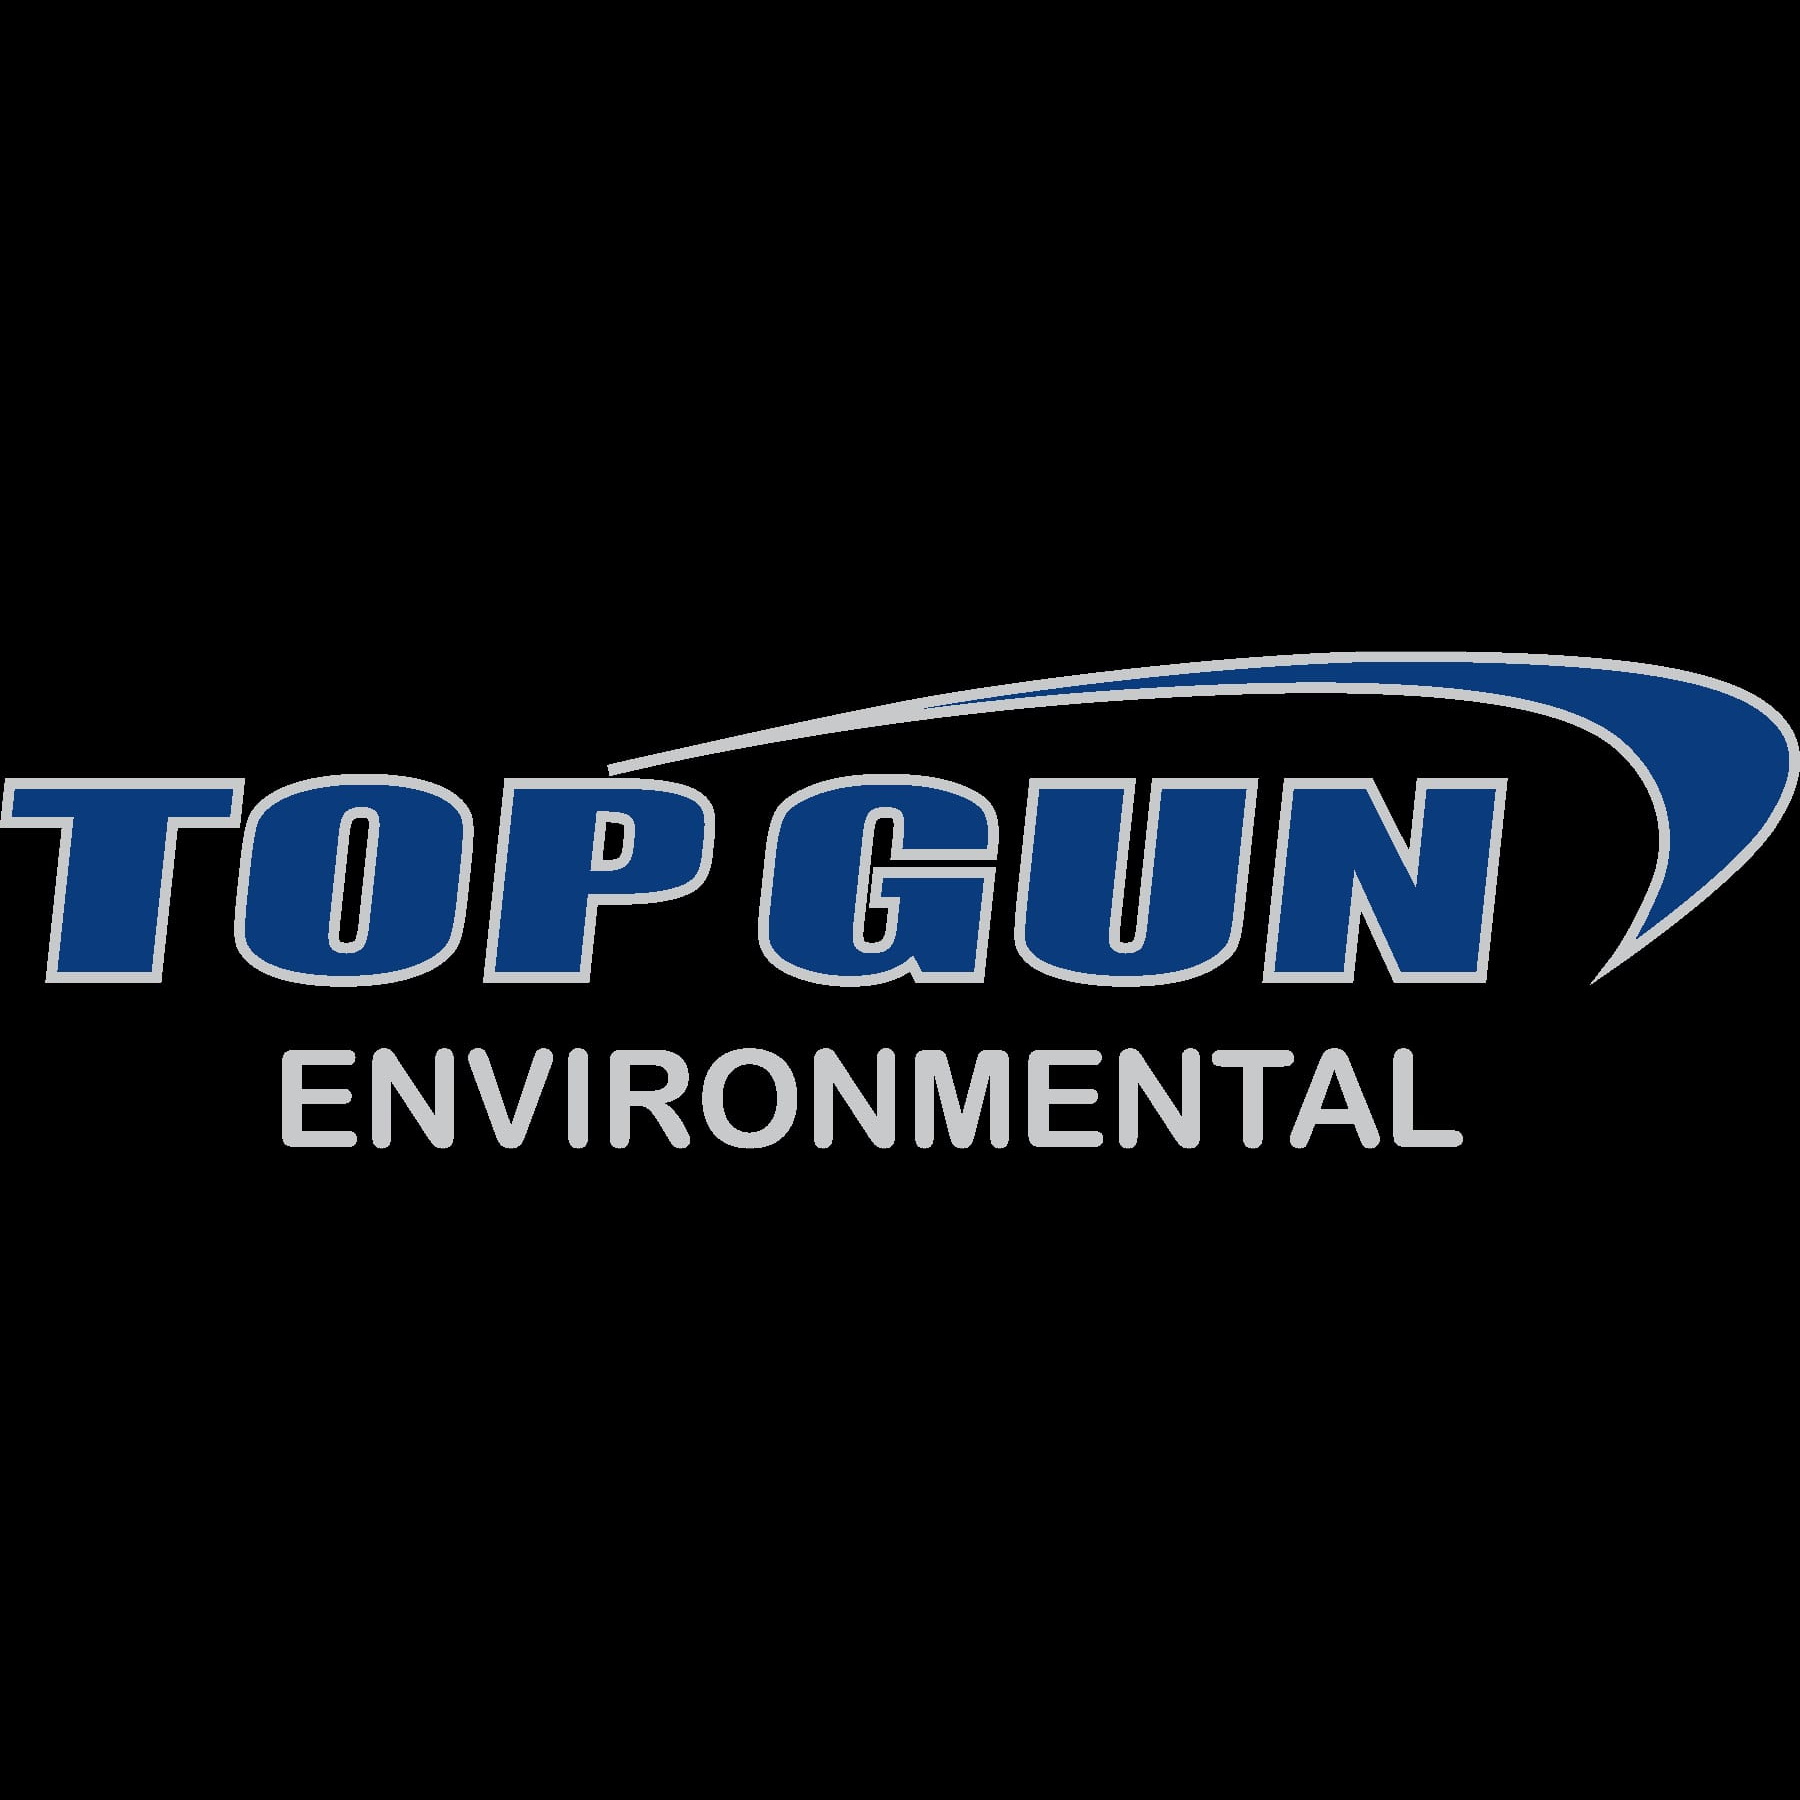 Top Gun Environmental